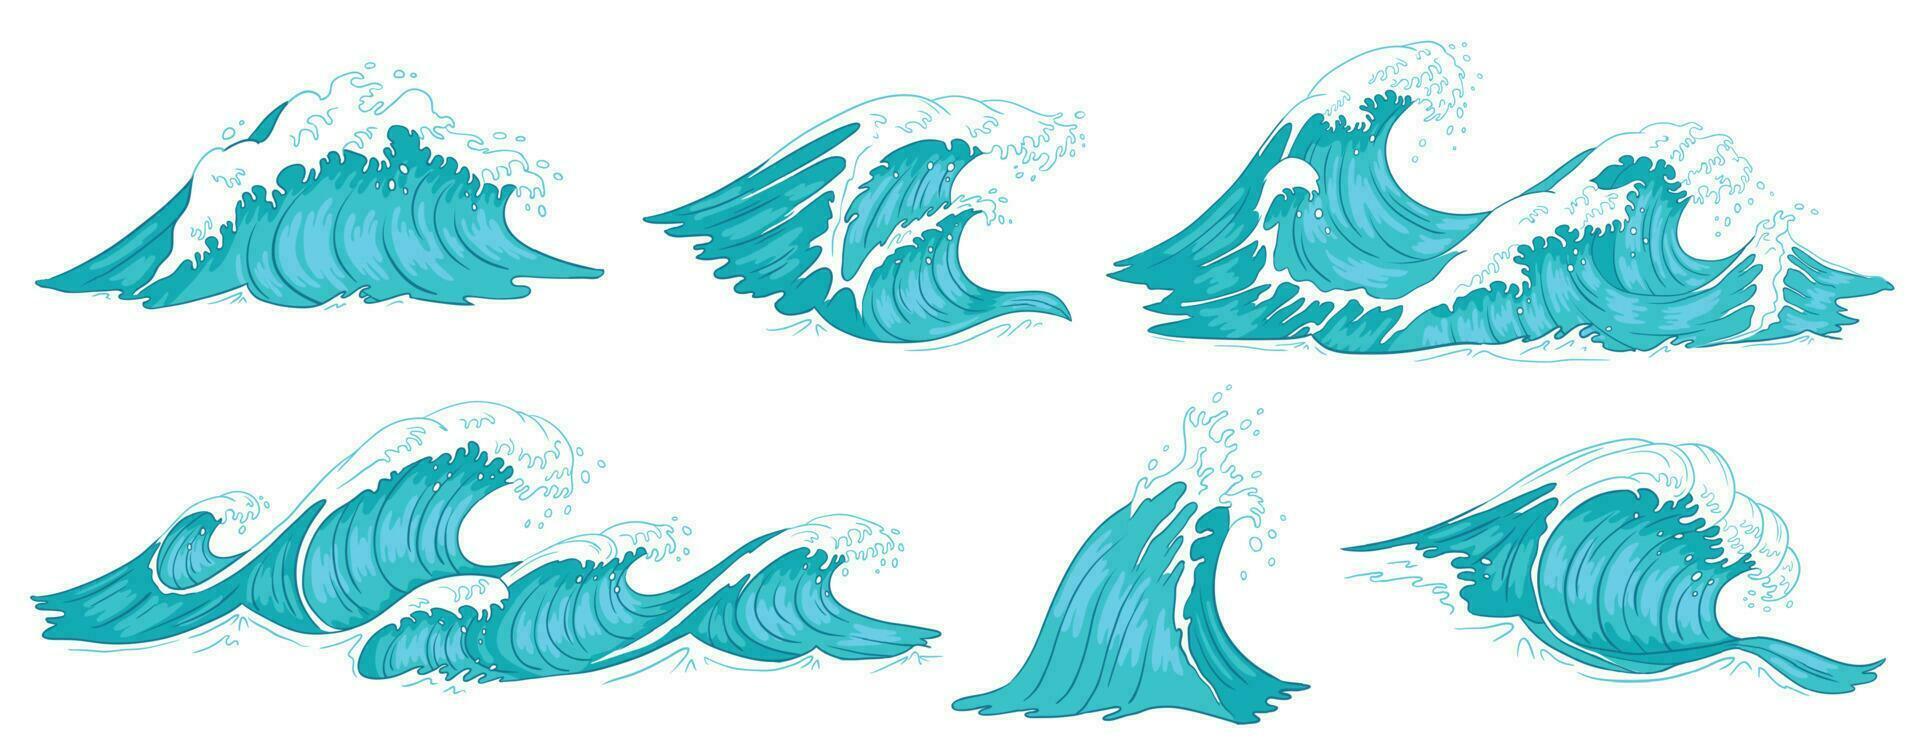 Meer Welle. Jahrgang Ozean Wellen, Blau Wasser Tide und Gezeiten Welle Hand gezeichnet Vektor Illustration einstellen